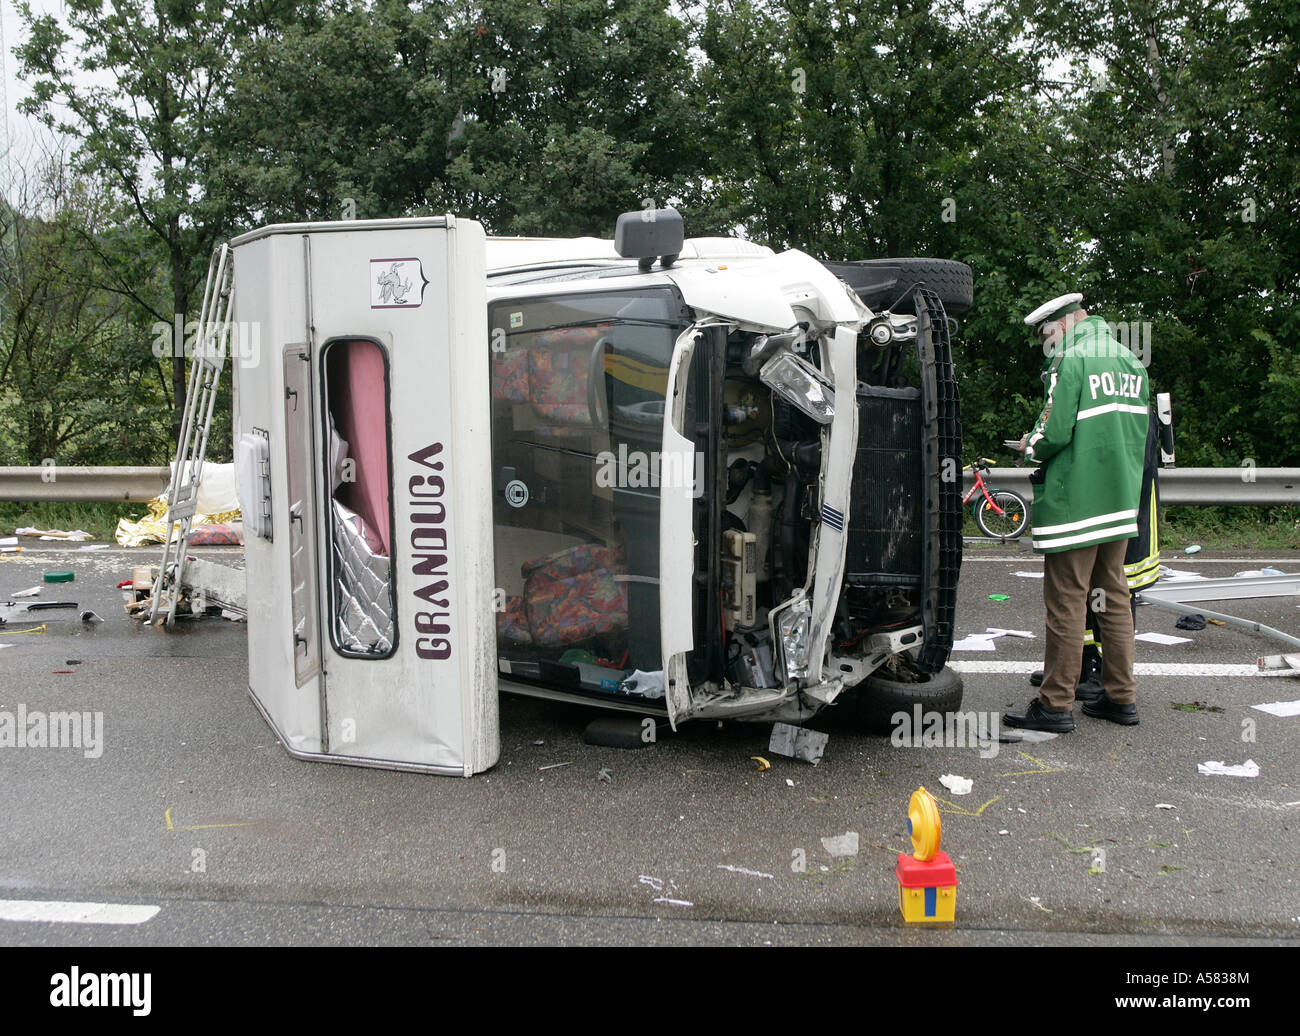 Un camping car a baissé au cours d'un accident Banque D'Images